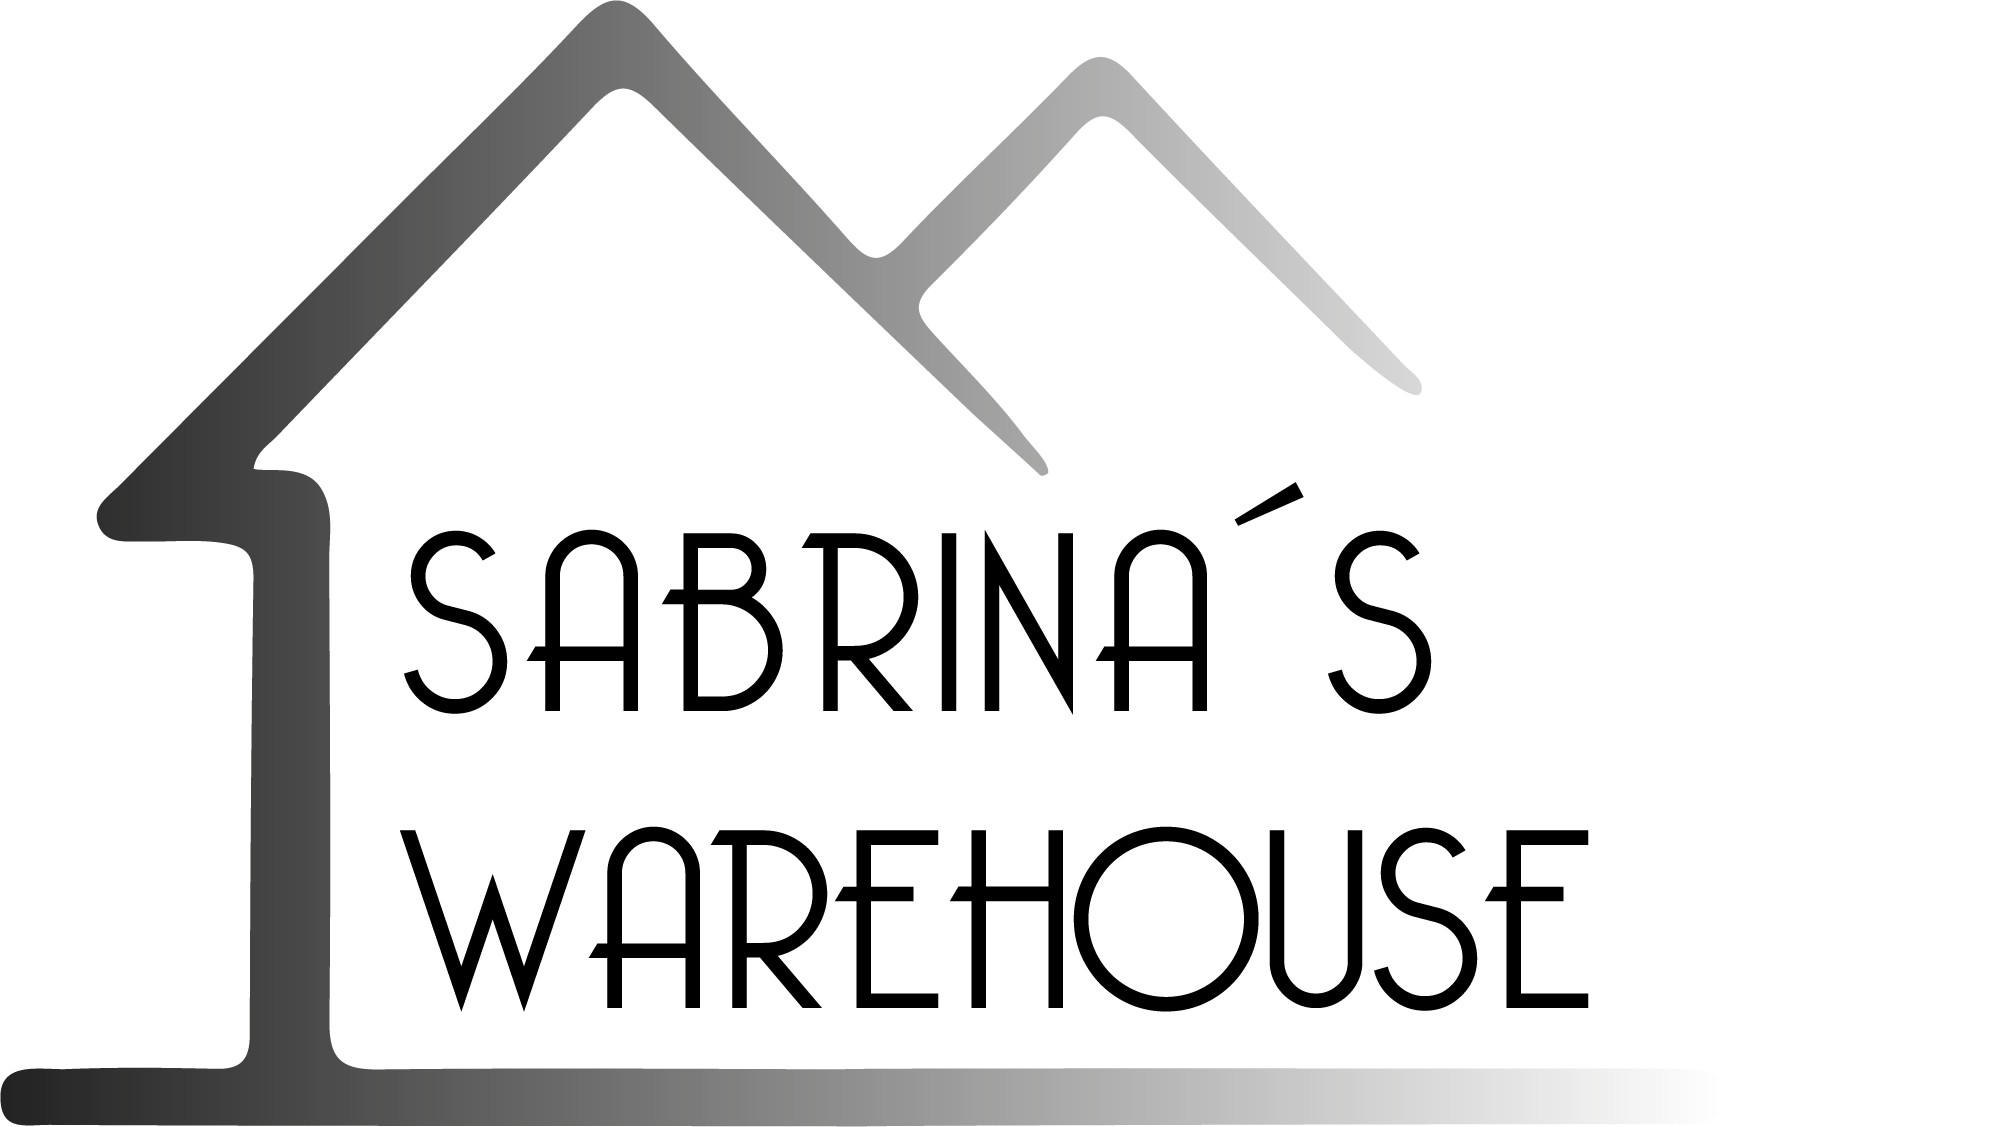 Sabrinas Warehouse